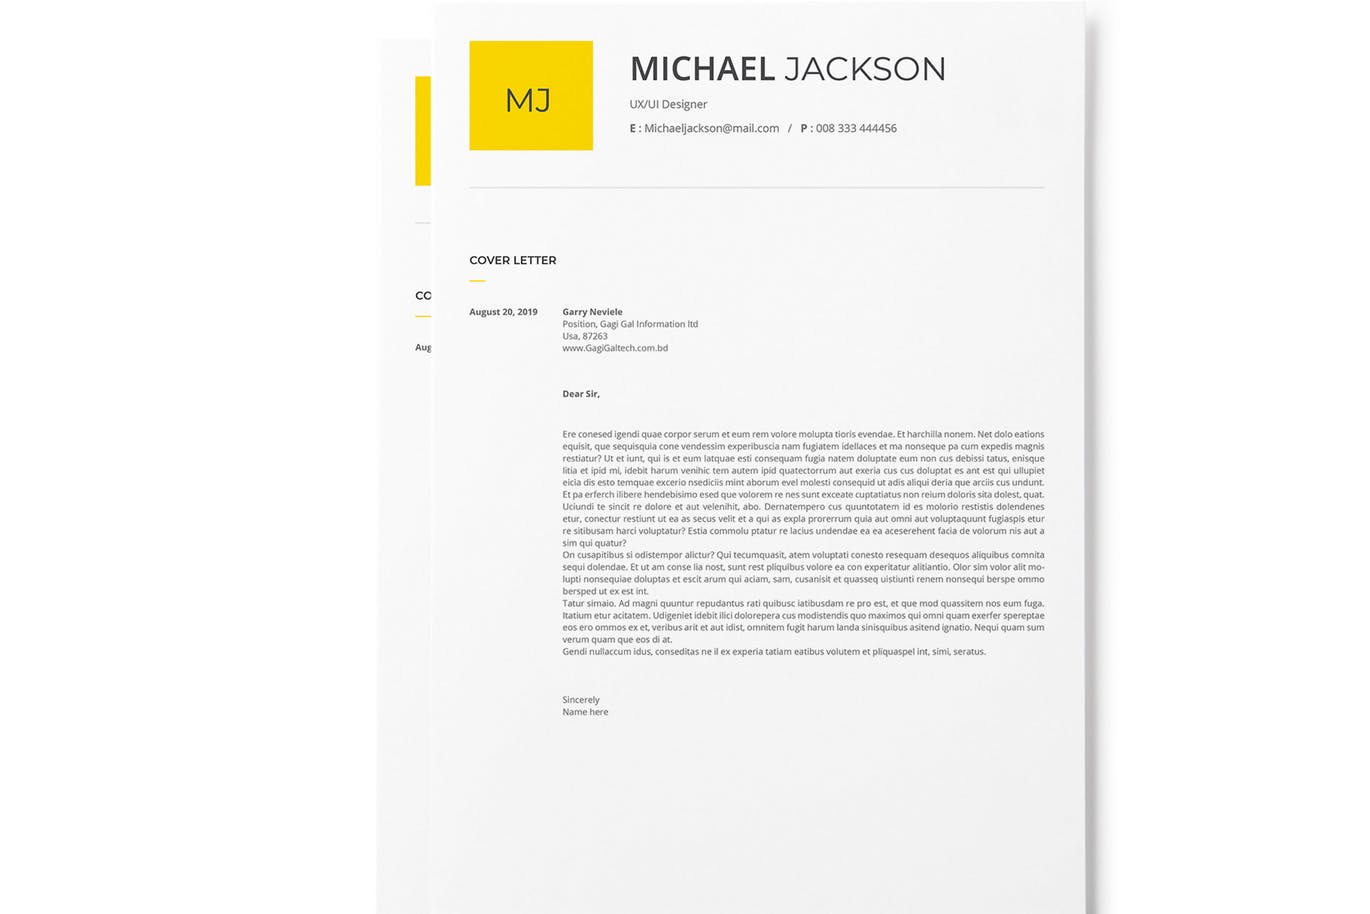 极简设计风格个人电子简历&介绍信设计模板 Minimal Resume And Cover Letter With Yellow Acsen插图(1)